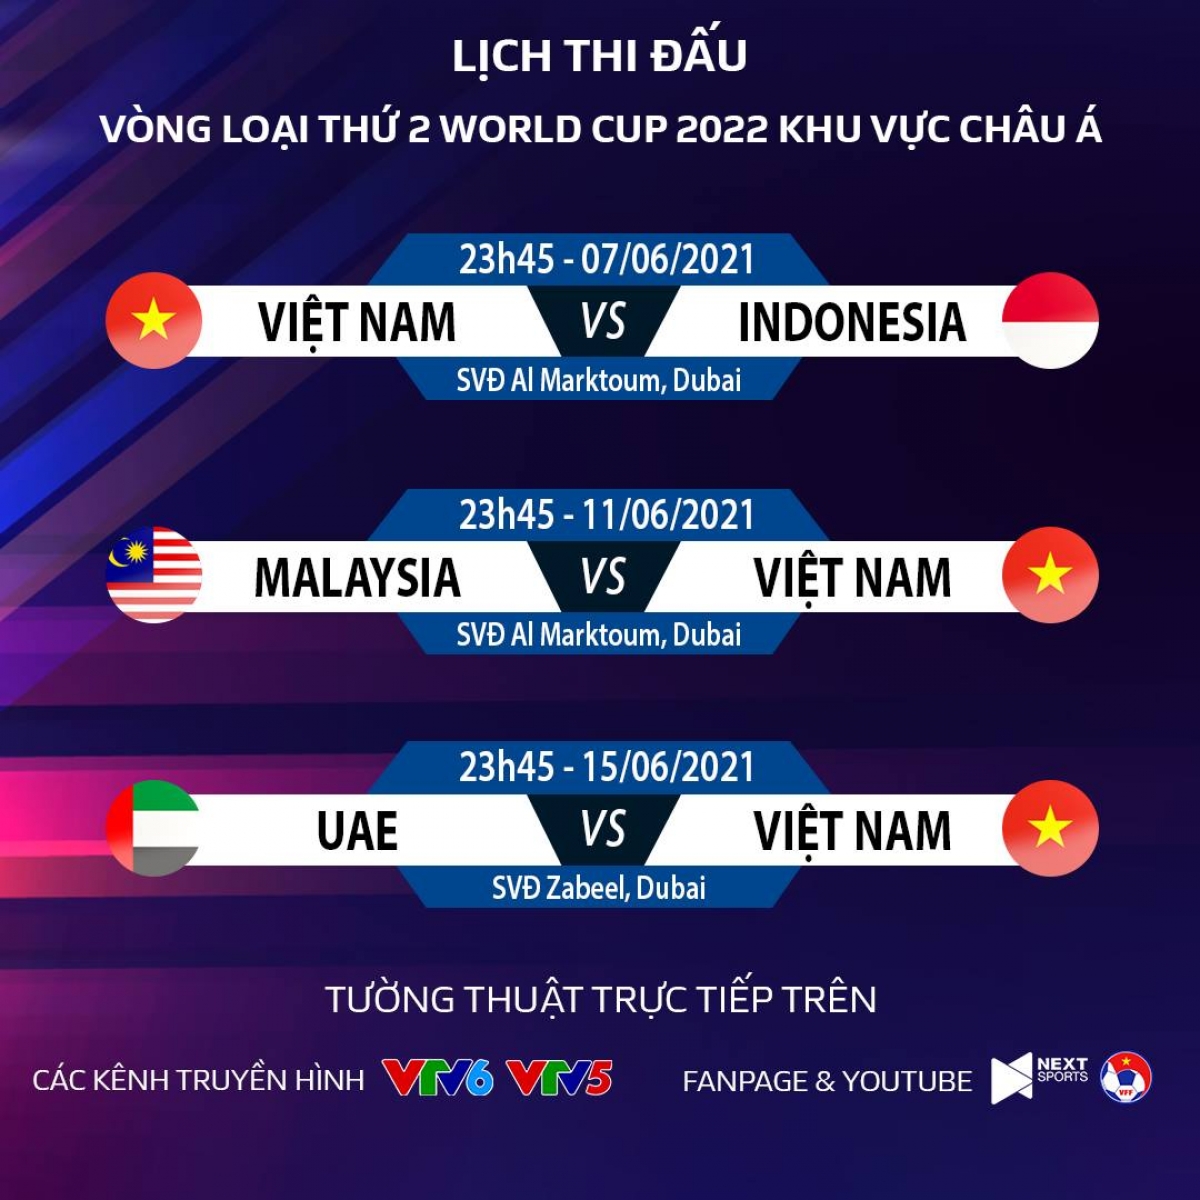 Lịch thi đấu 3 trận còn lại của đội tuyển Việt Nam tại bảng G Vòng loại 2 World Cup 2022 khu vực châu Á